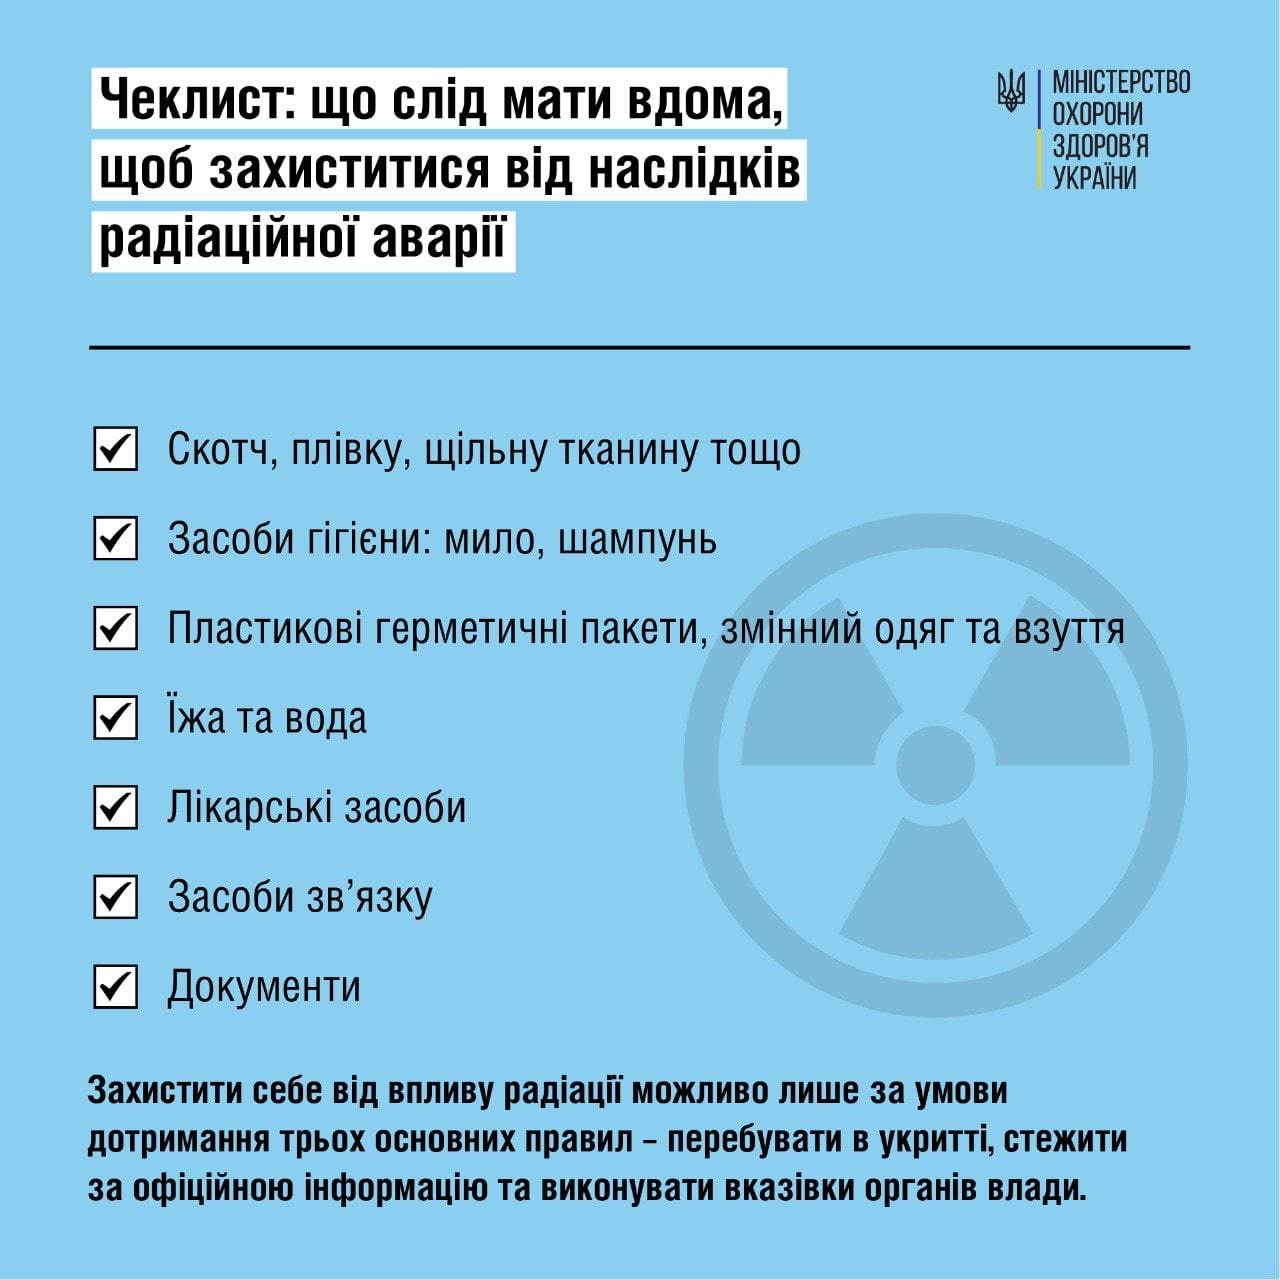 МОЗ выпустило рекомендации касательно того, что нужно иметь дома, чтобы защититься от последствий радиационной аварии